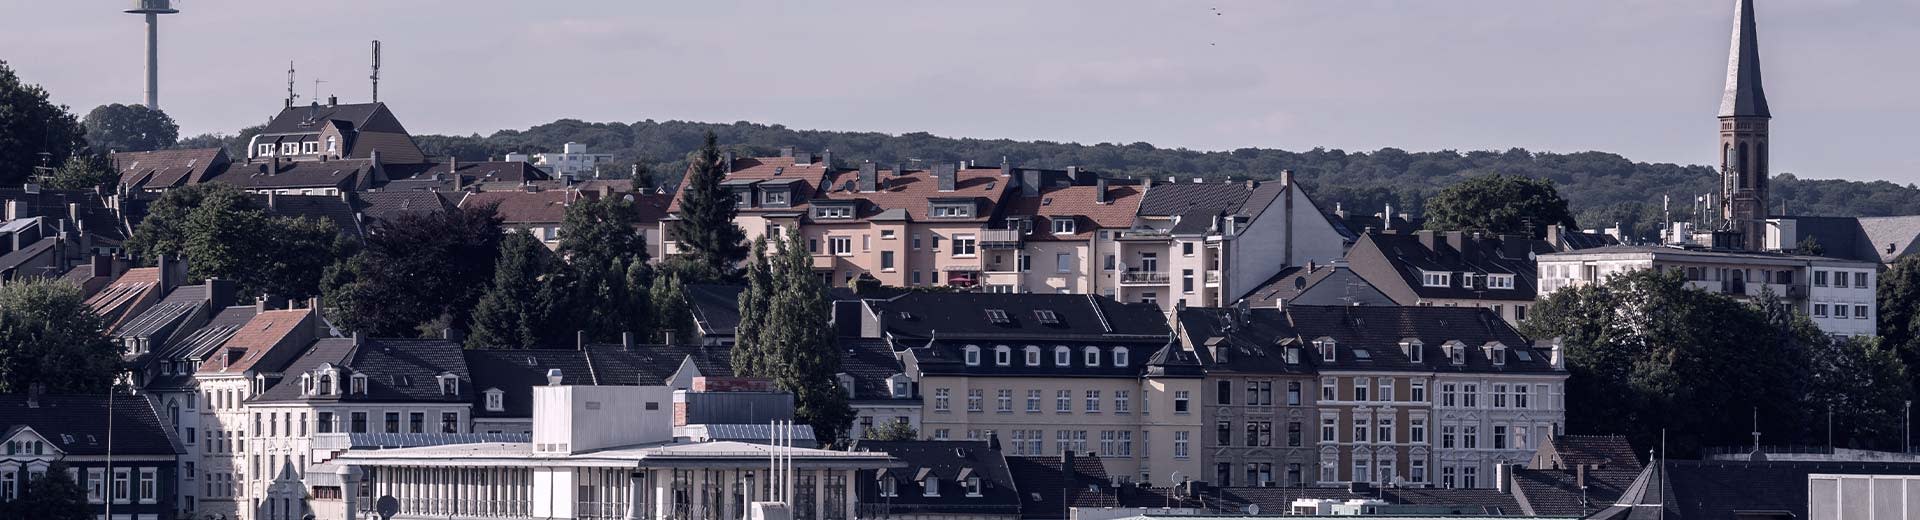 Un mélange de bâtiments résidentiels typiques de Wuppertal au premier plan est contrasté par des collines vertes au loin.